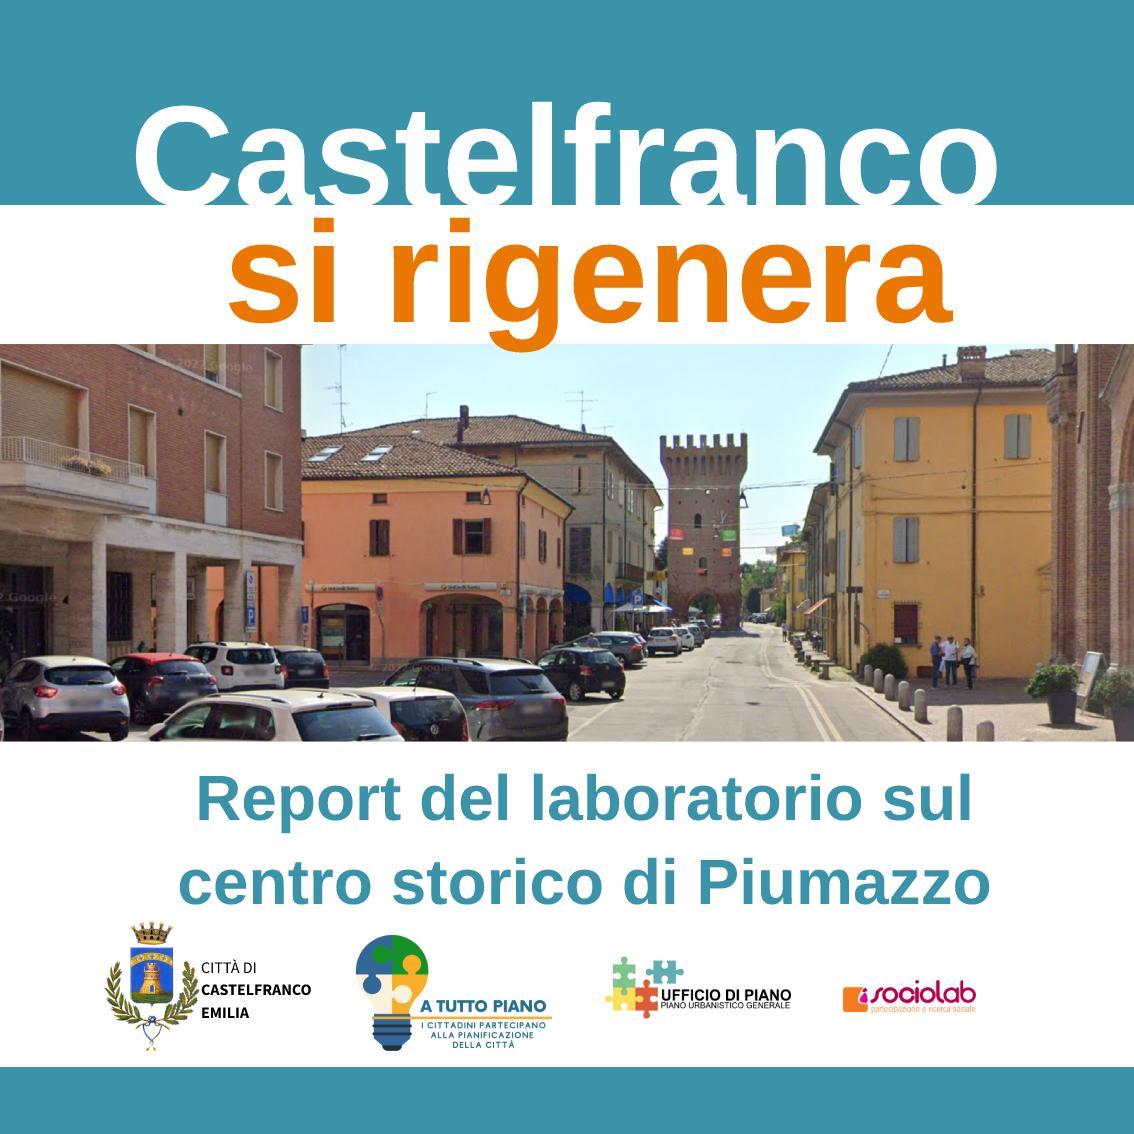 Castelfranco si rigenera - Piumazzo